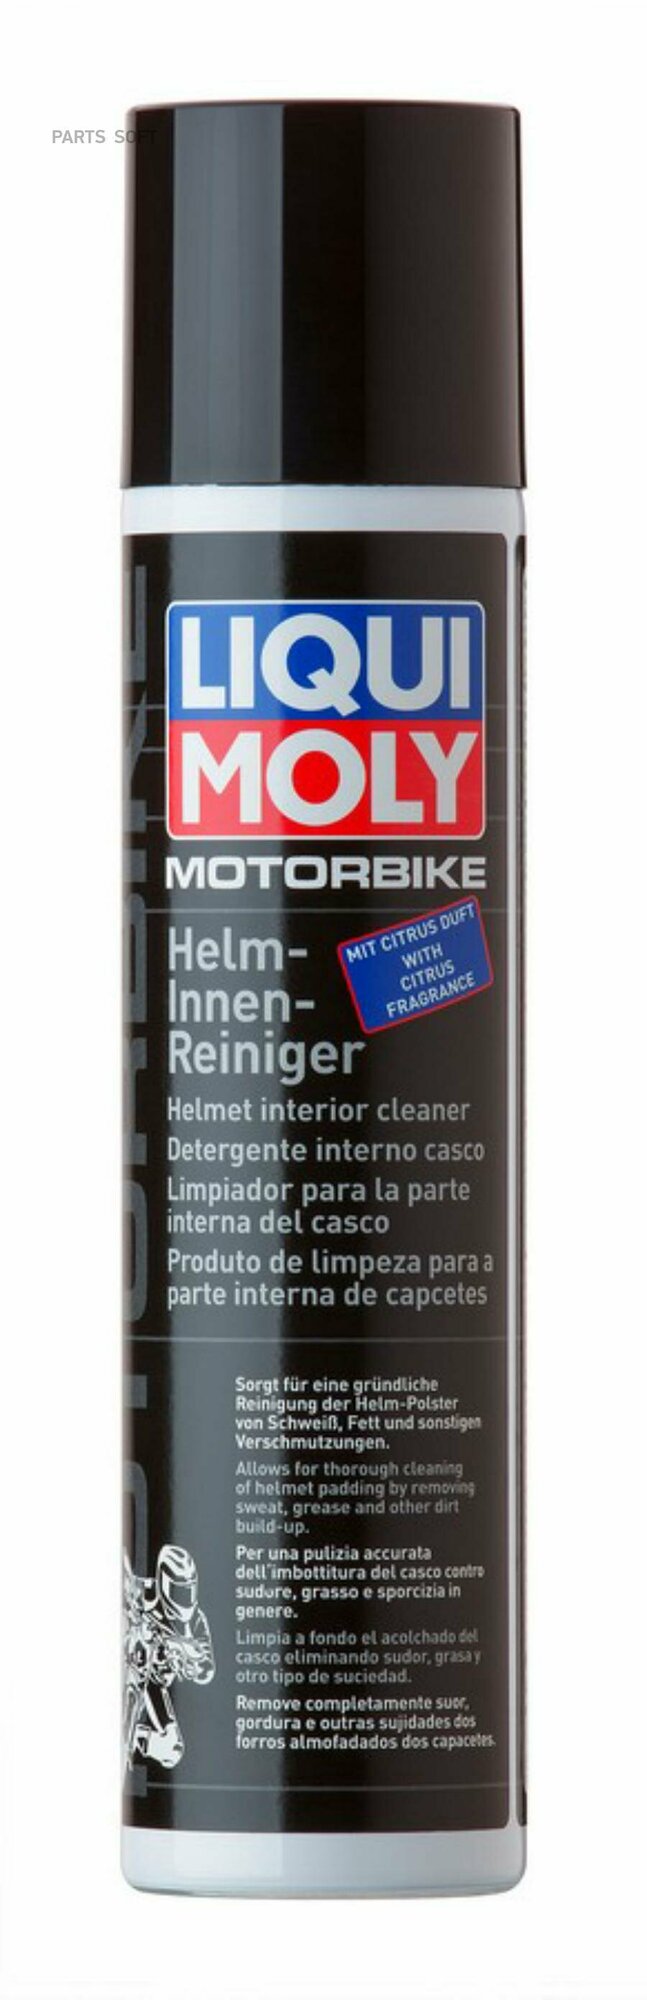 Очиститель Liqui Moly Motorbike Helm-Innen-Reiniger 0.3л (1603) - фото №2